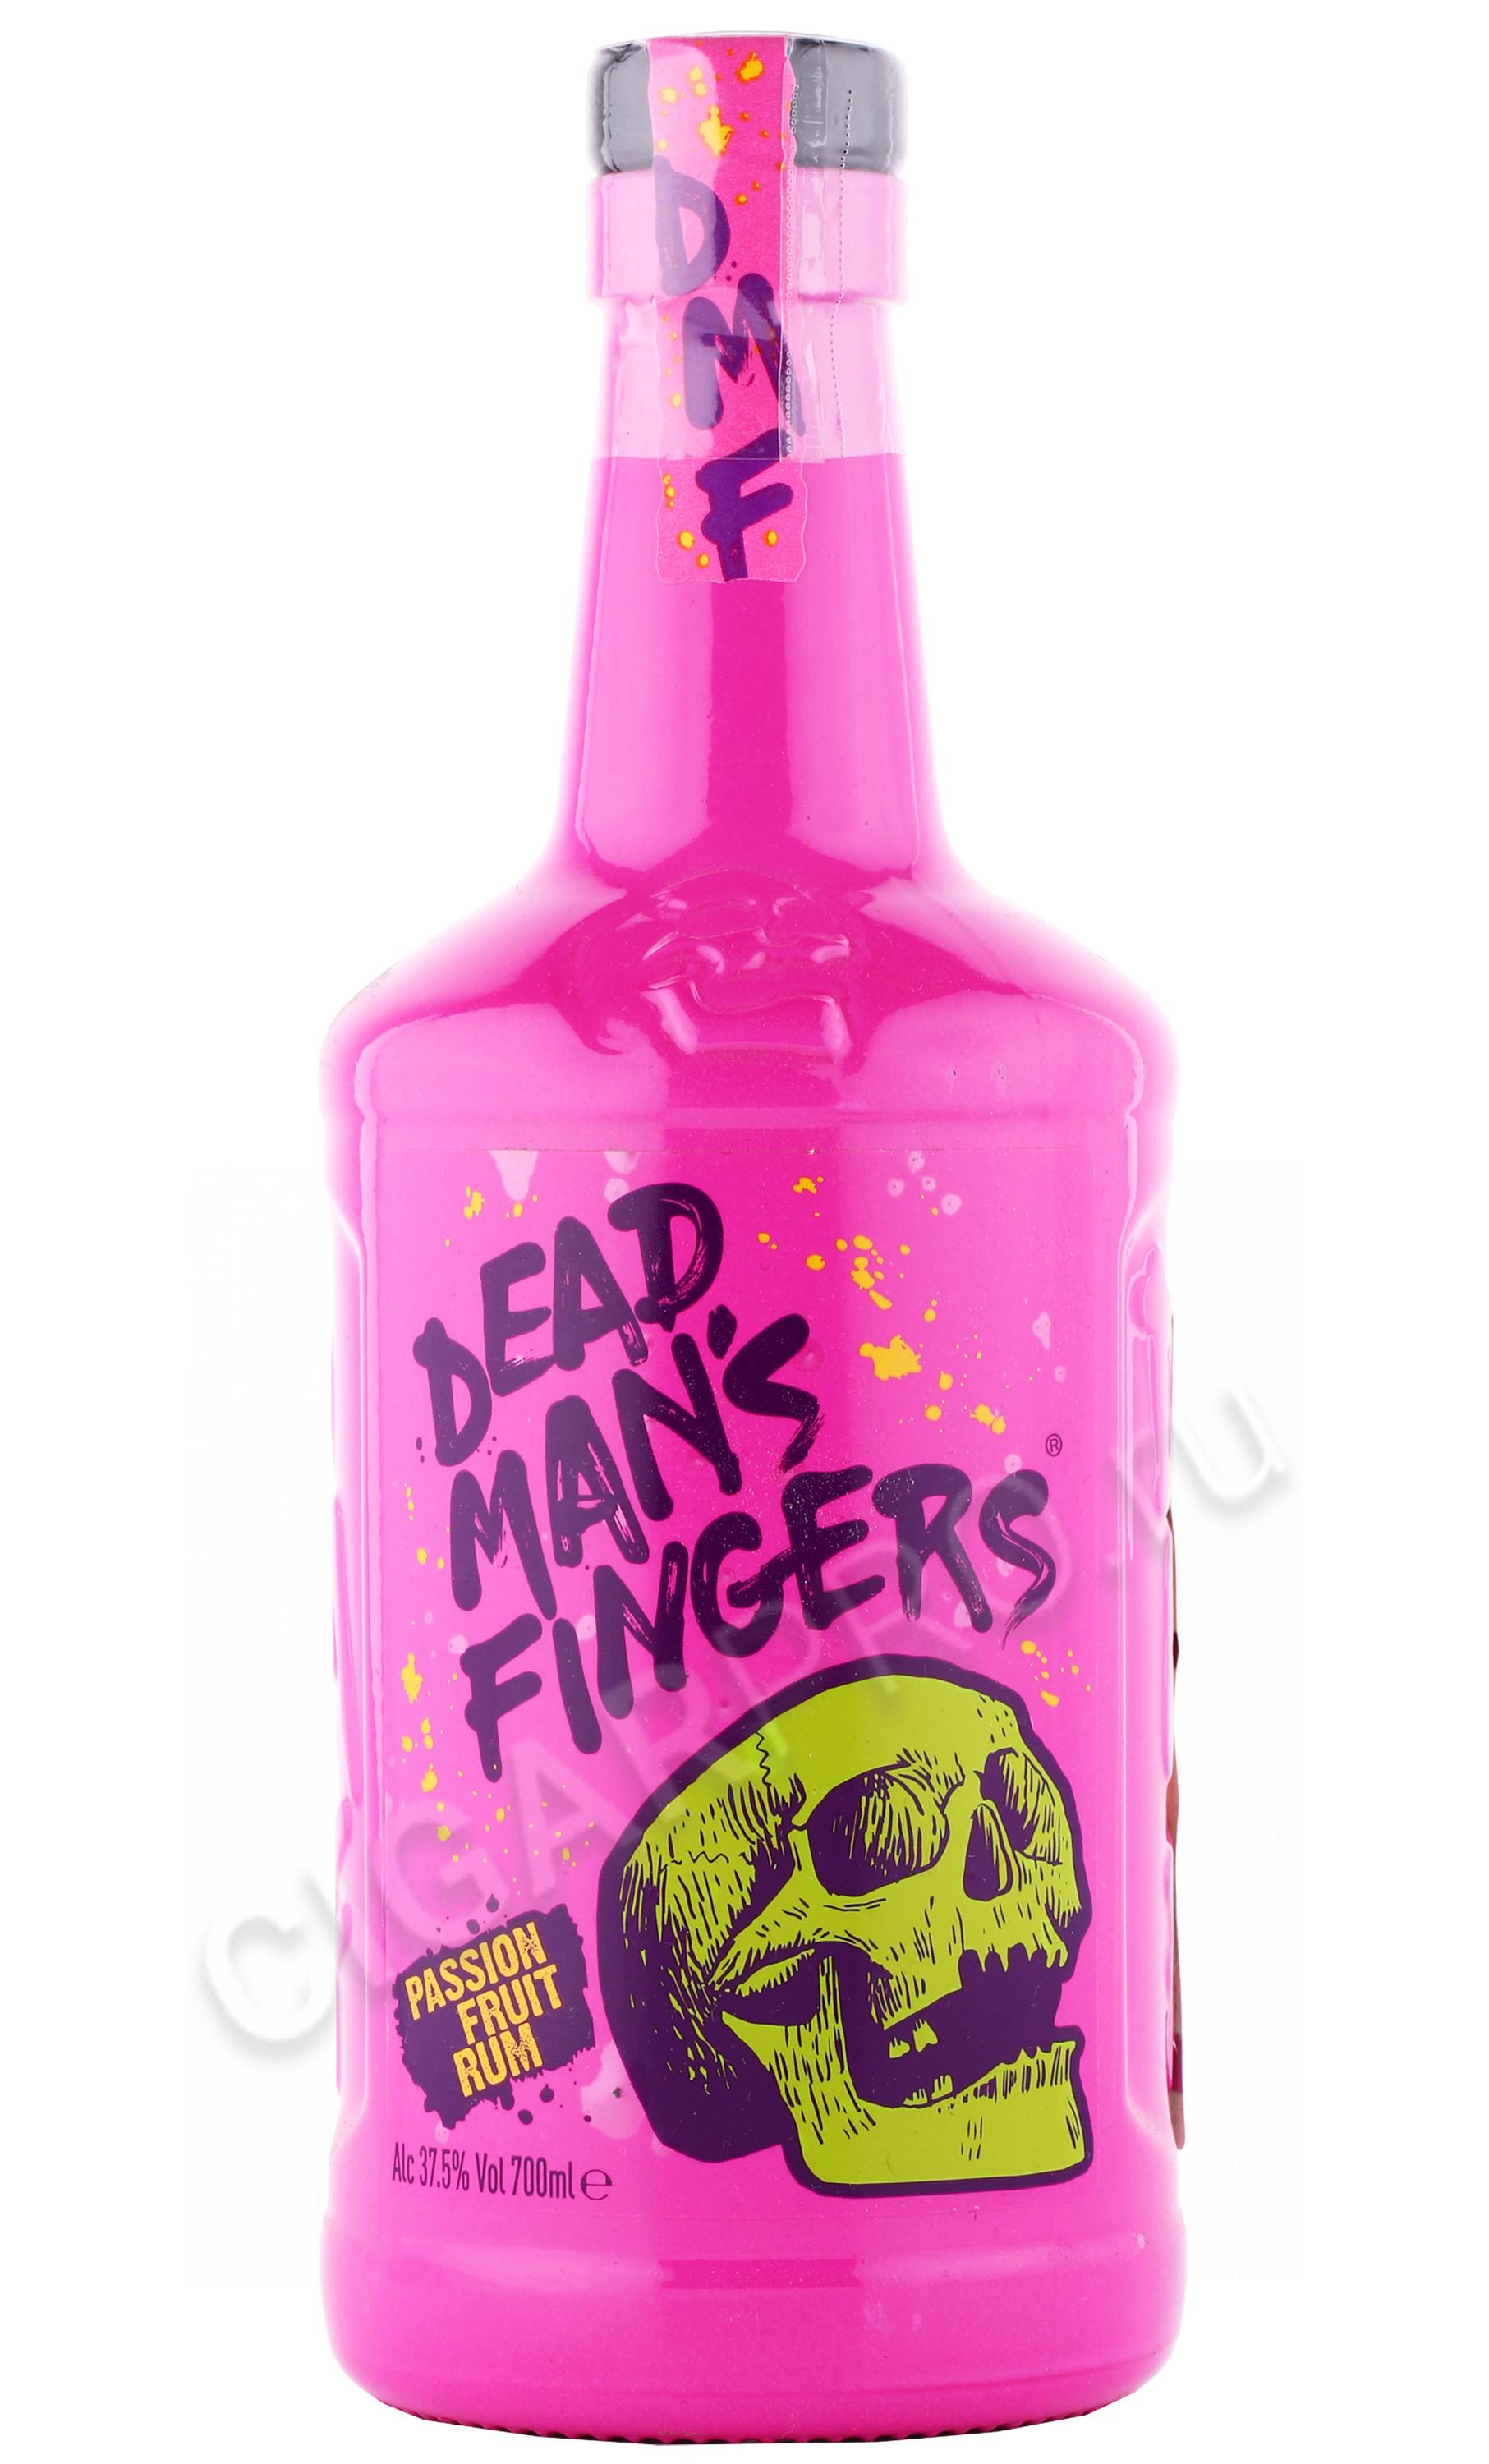 Dead Mans Fingers Passion Fruit Rum купить Ром Дэд Мэнс Фингерс Маракуйя 07л цена Cigar Pro